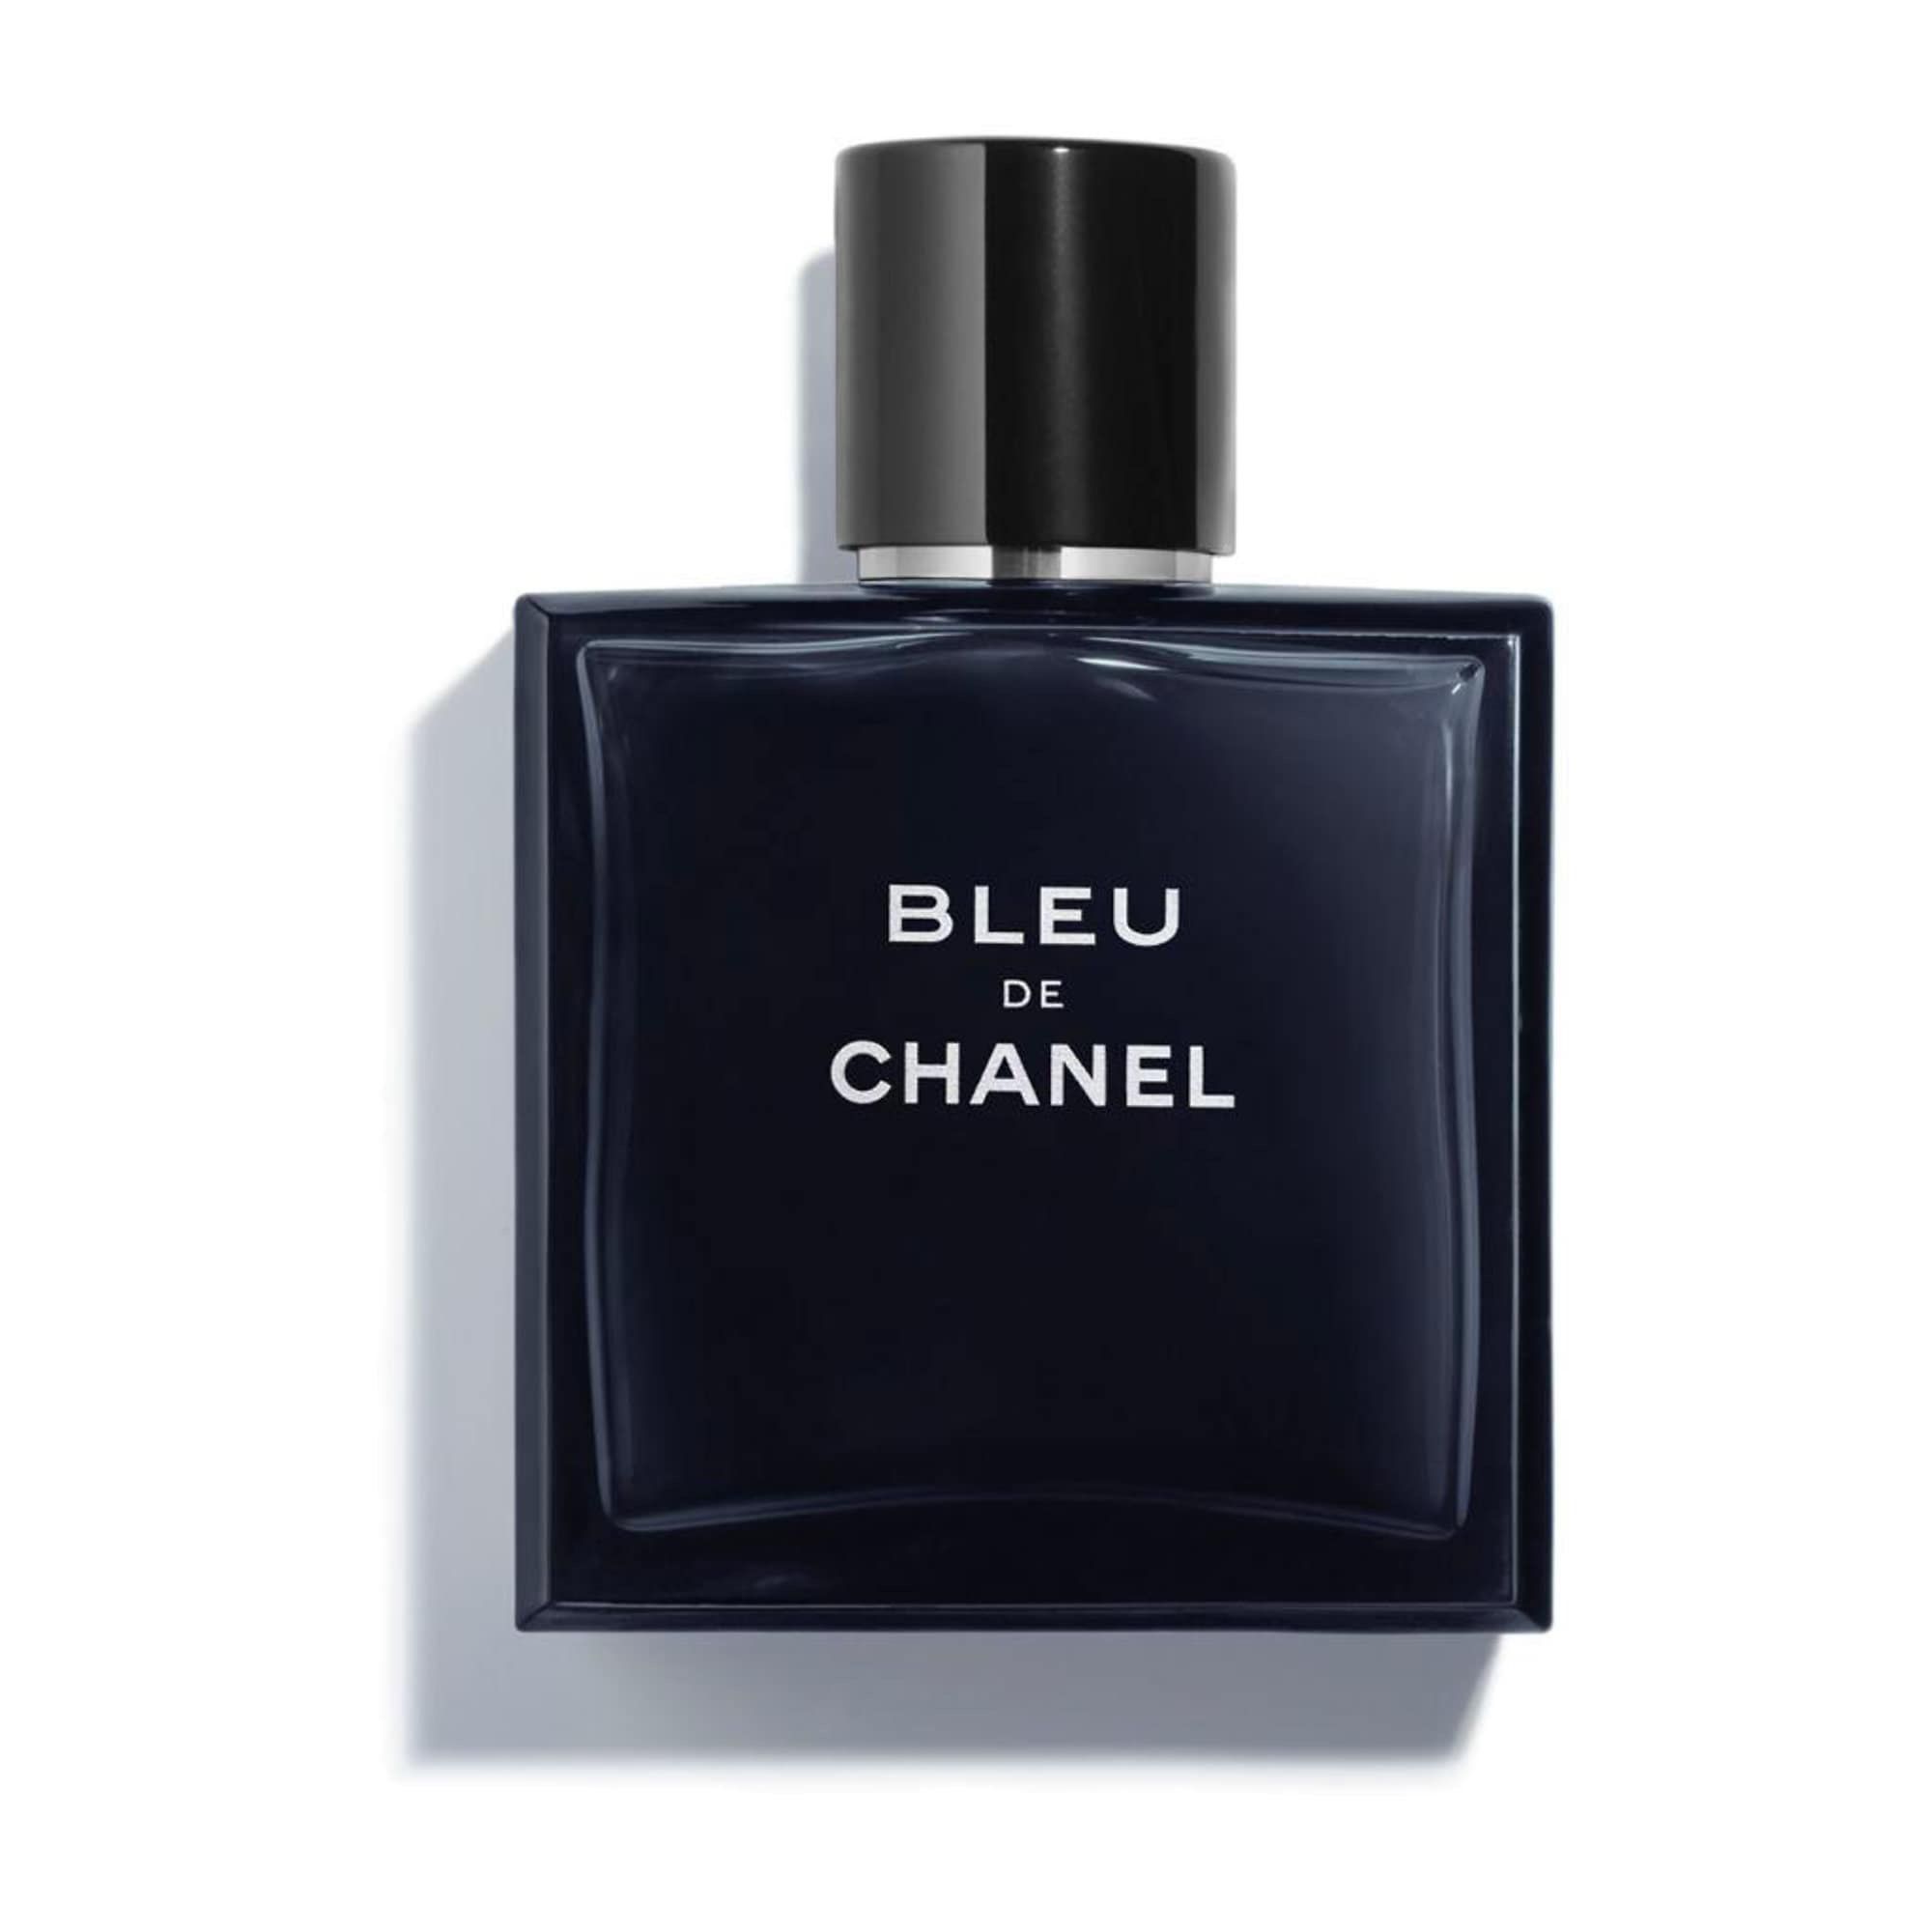 Bleu De Chanel Cologne for Sale in Miami, FL - OfferUp